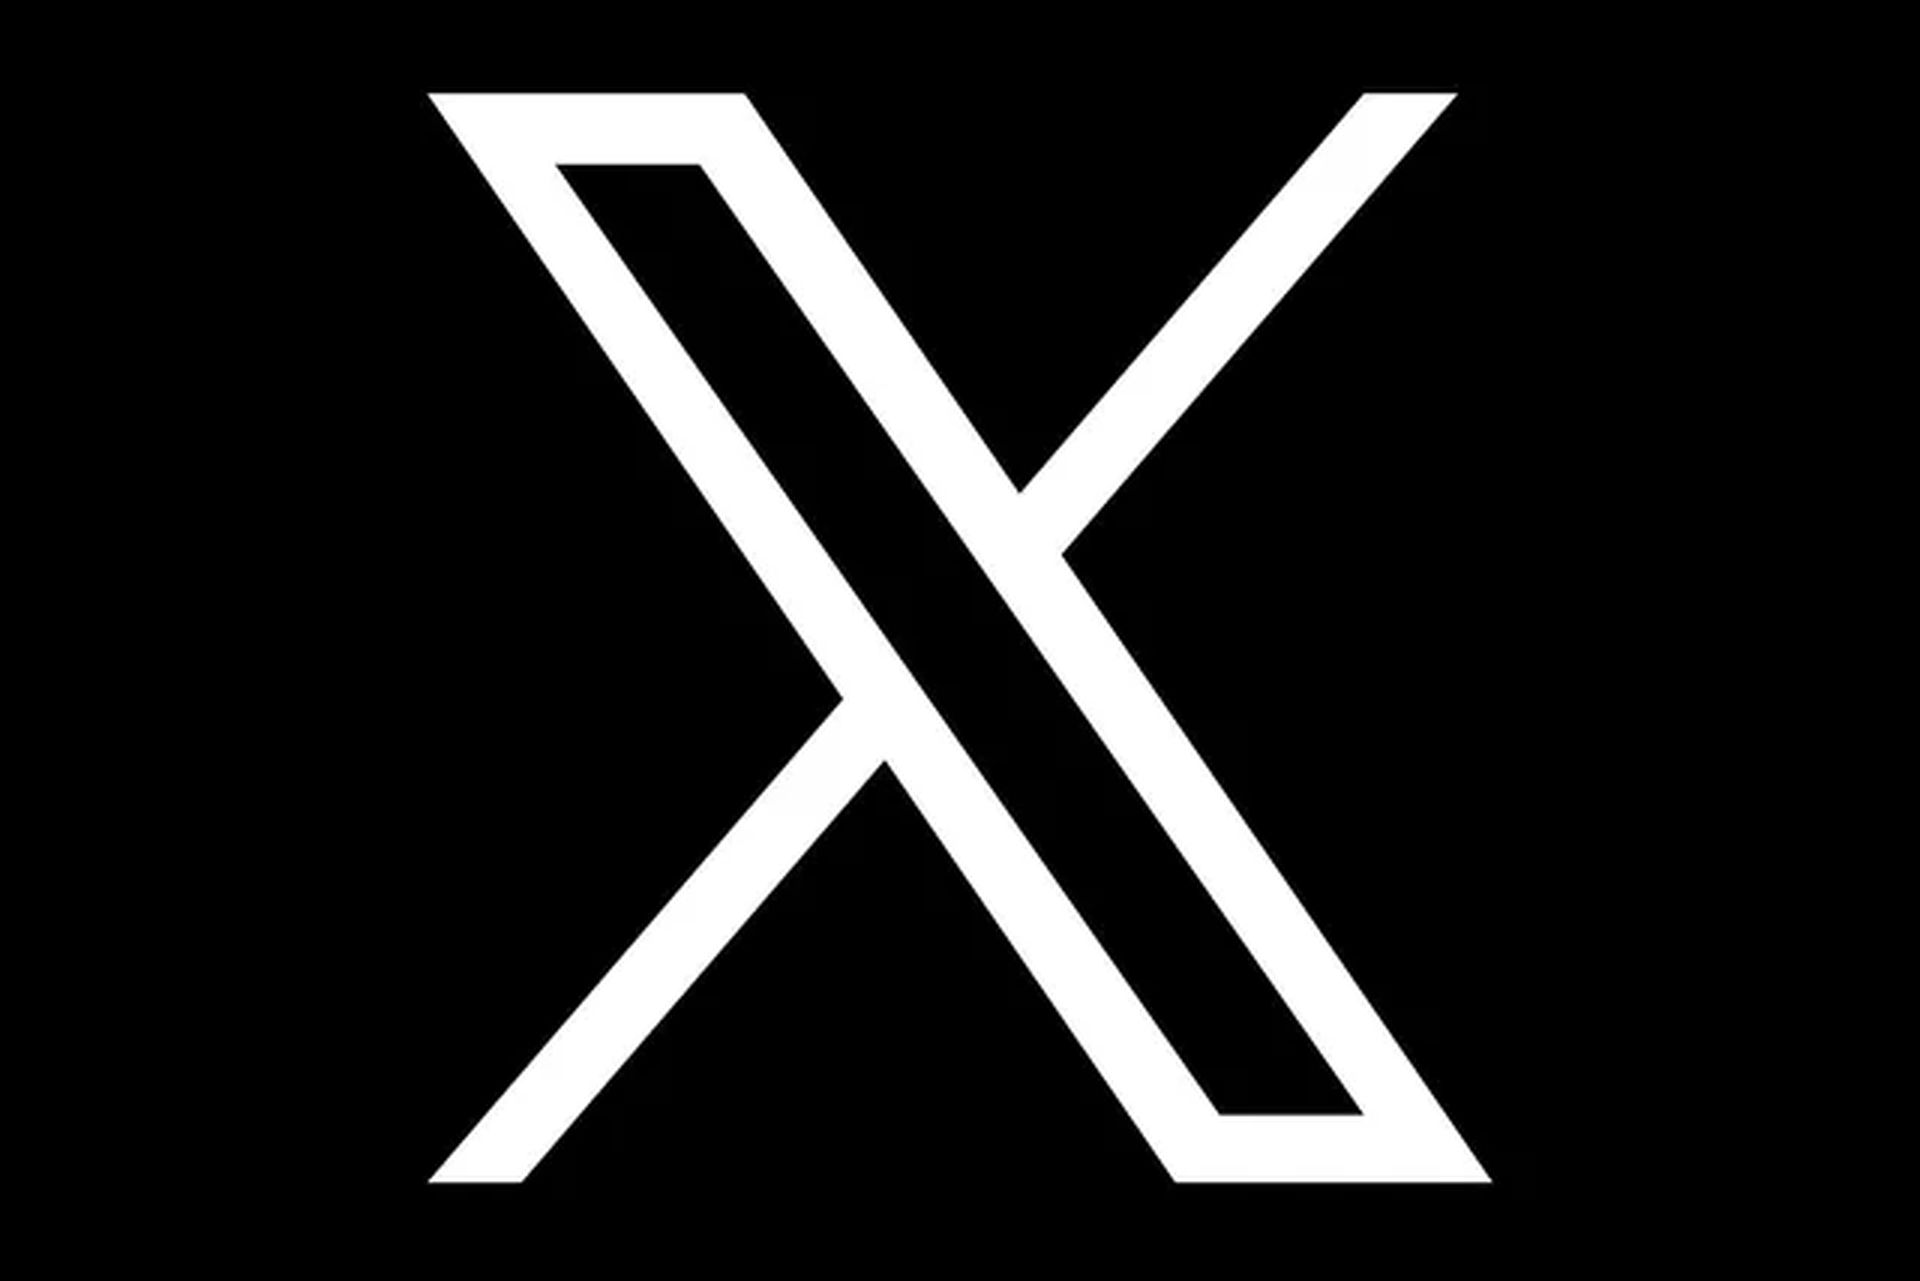 Twitter yeni logo: X App hakkında her şey